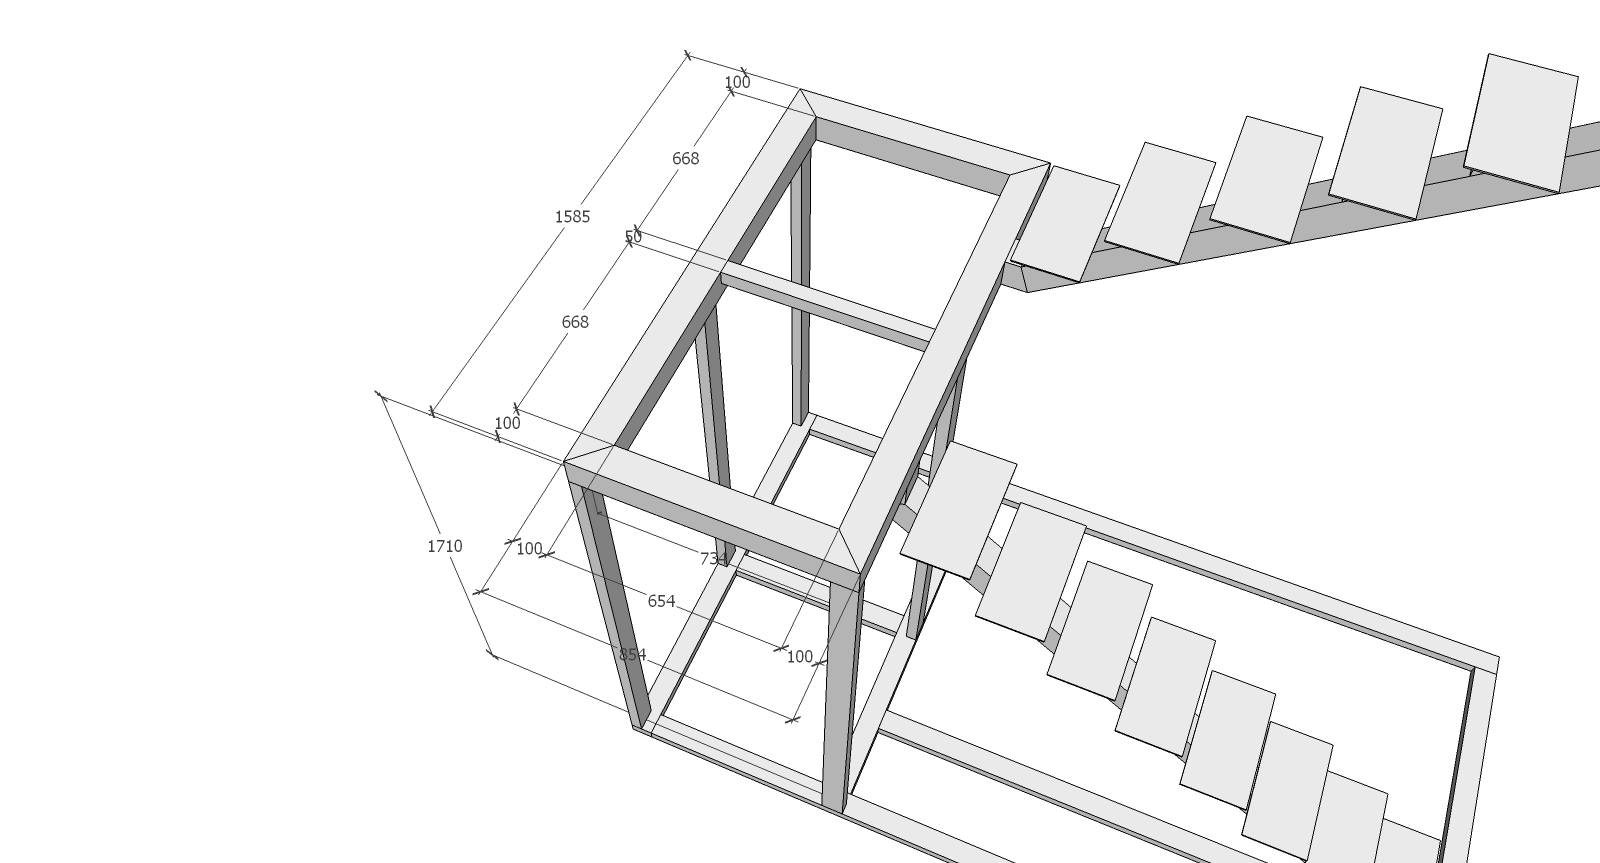 Лестница из профильной трубы своими руками – чертежи различных конструкций и правила монтажа